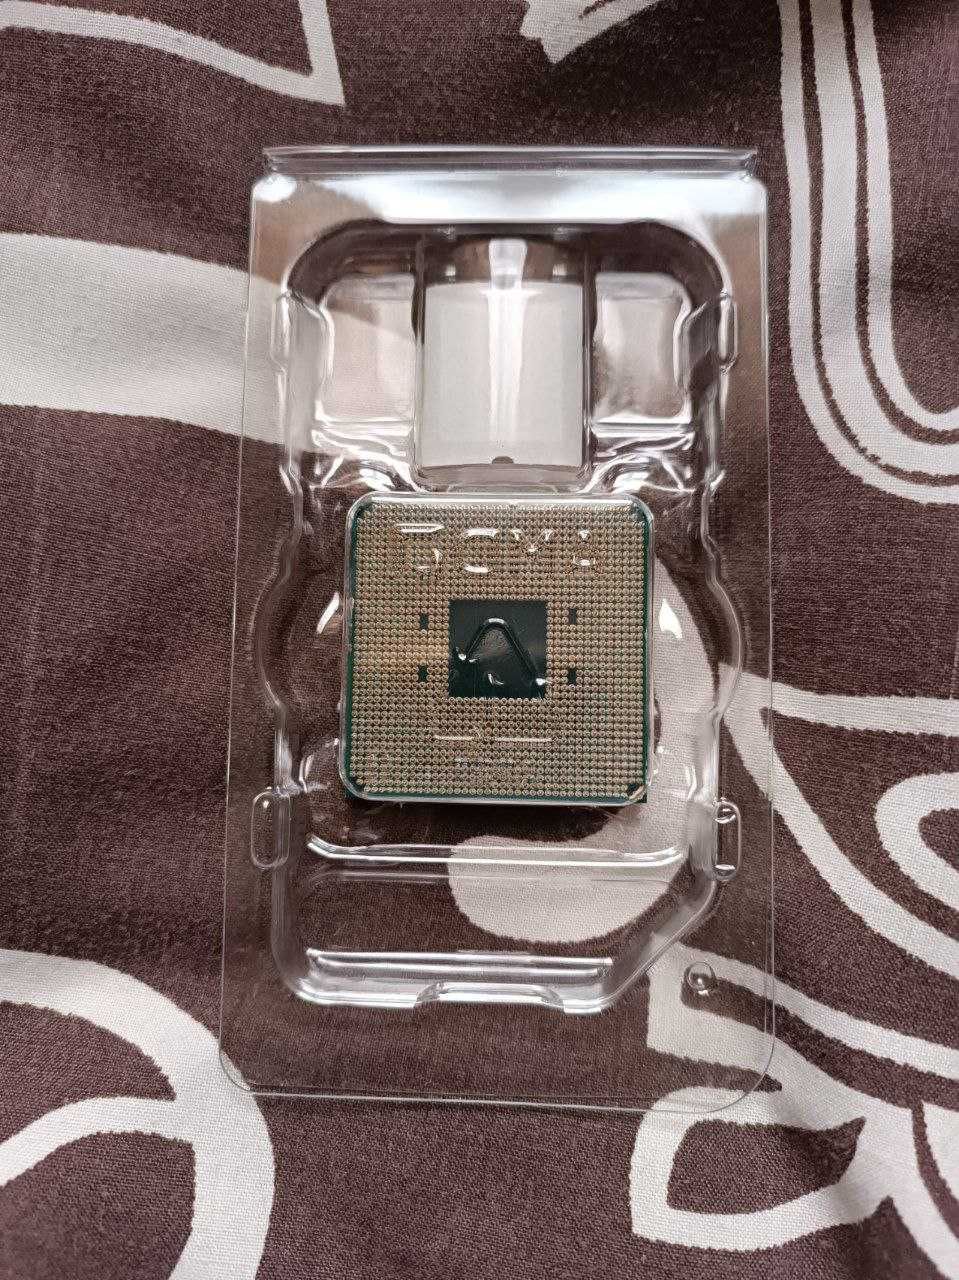 Процесор AMD Ryzen 5 5600X